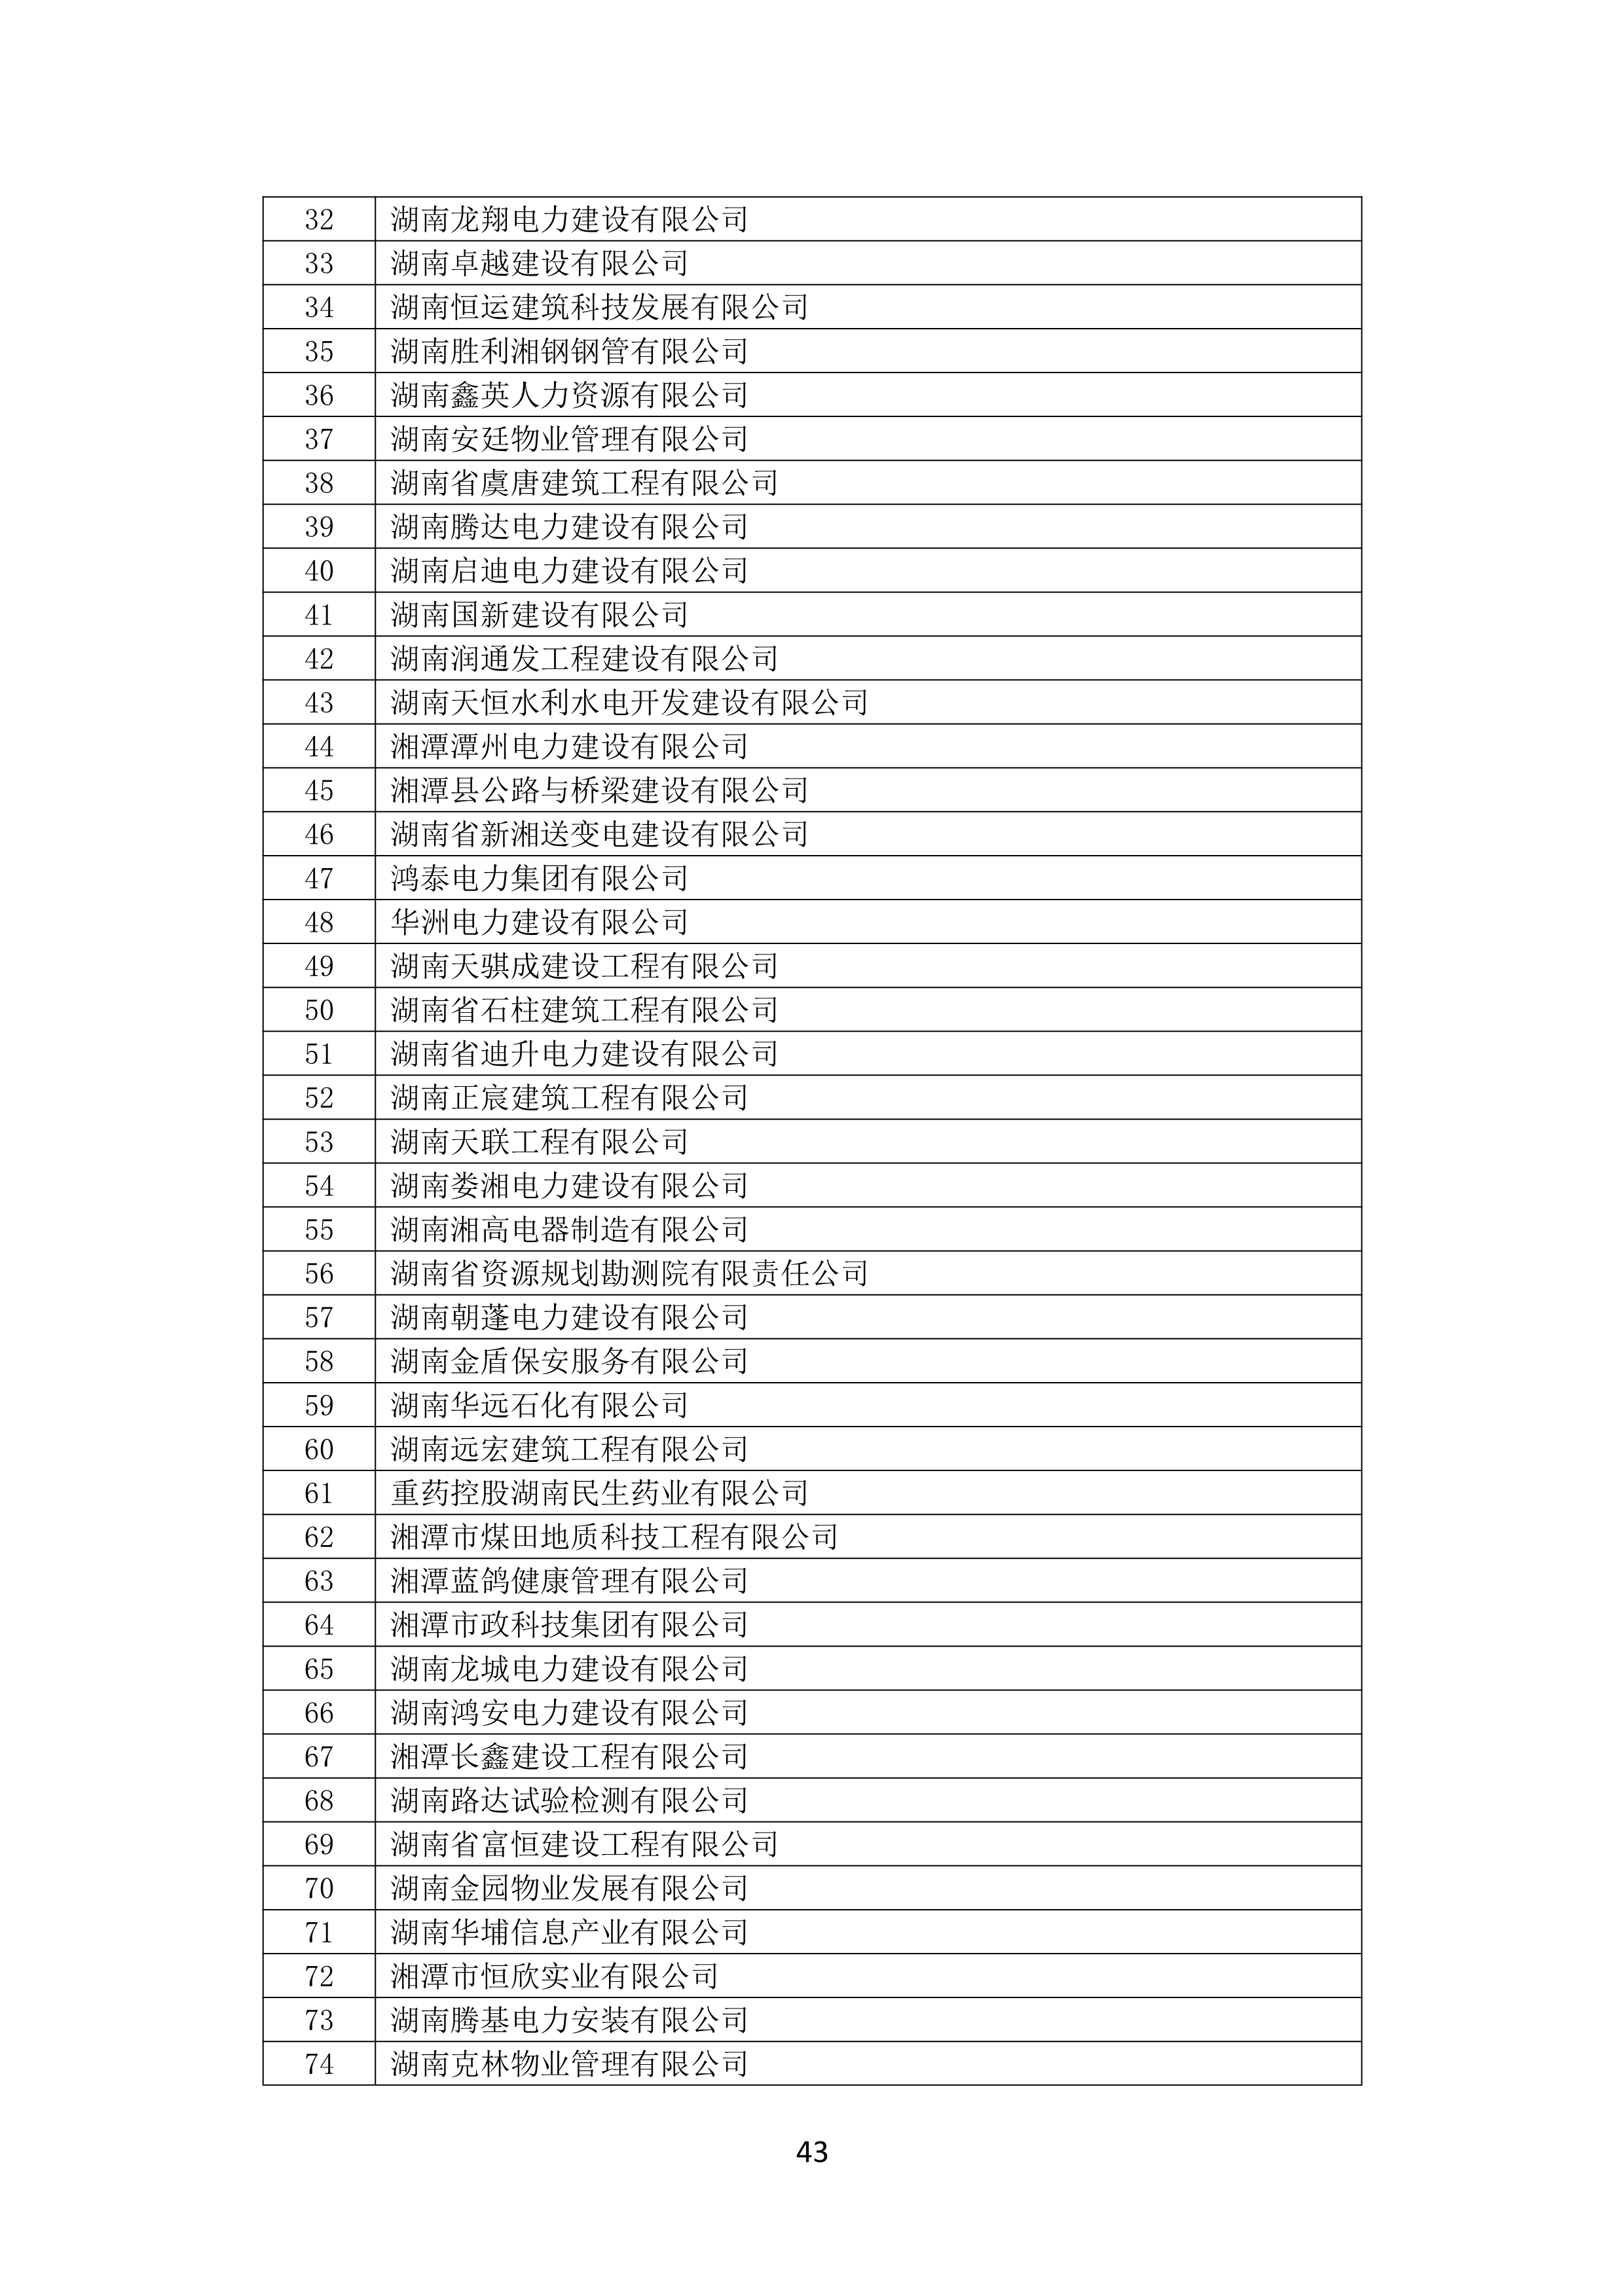 2021 年(nián)度湖南省守合同重信用企業名單_44.png